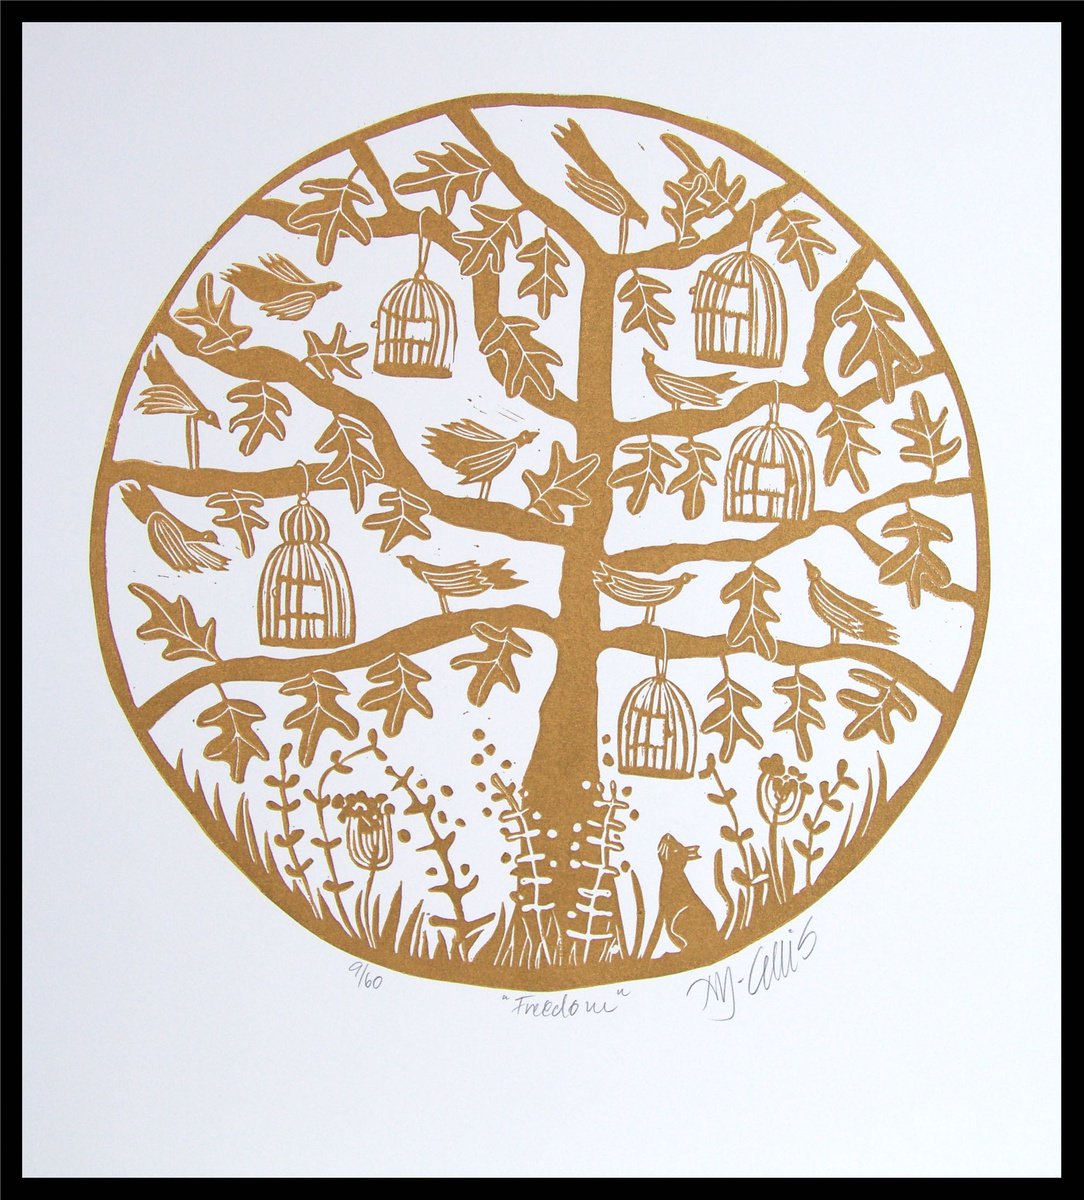 Freedom, round linocut printed in gold on white by Mariann Johansen-Ellis